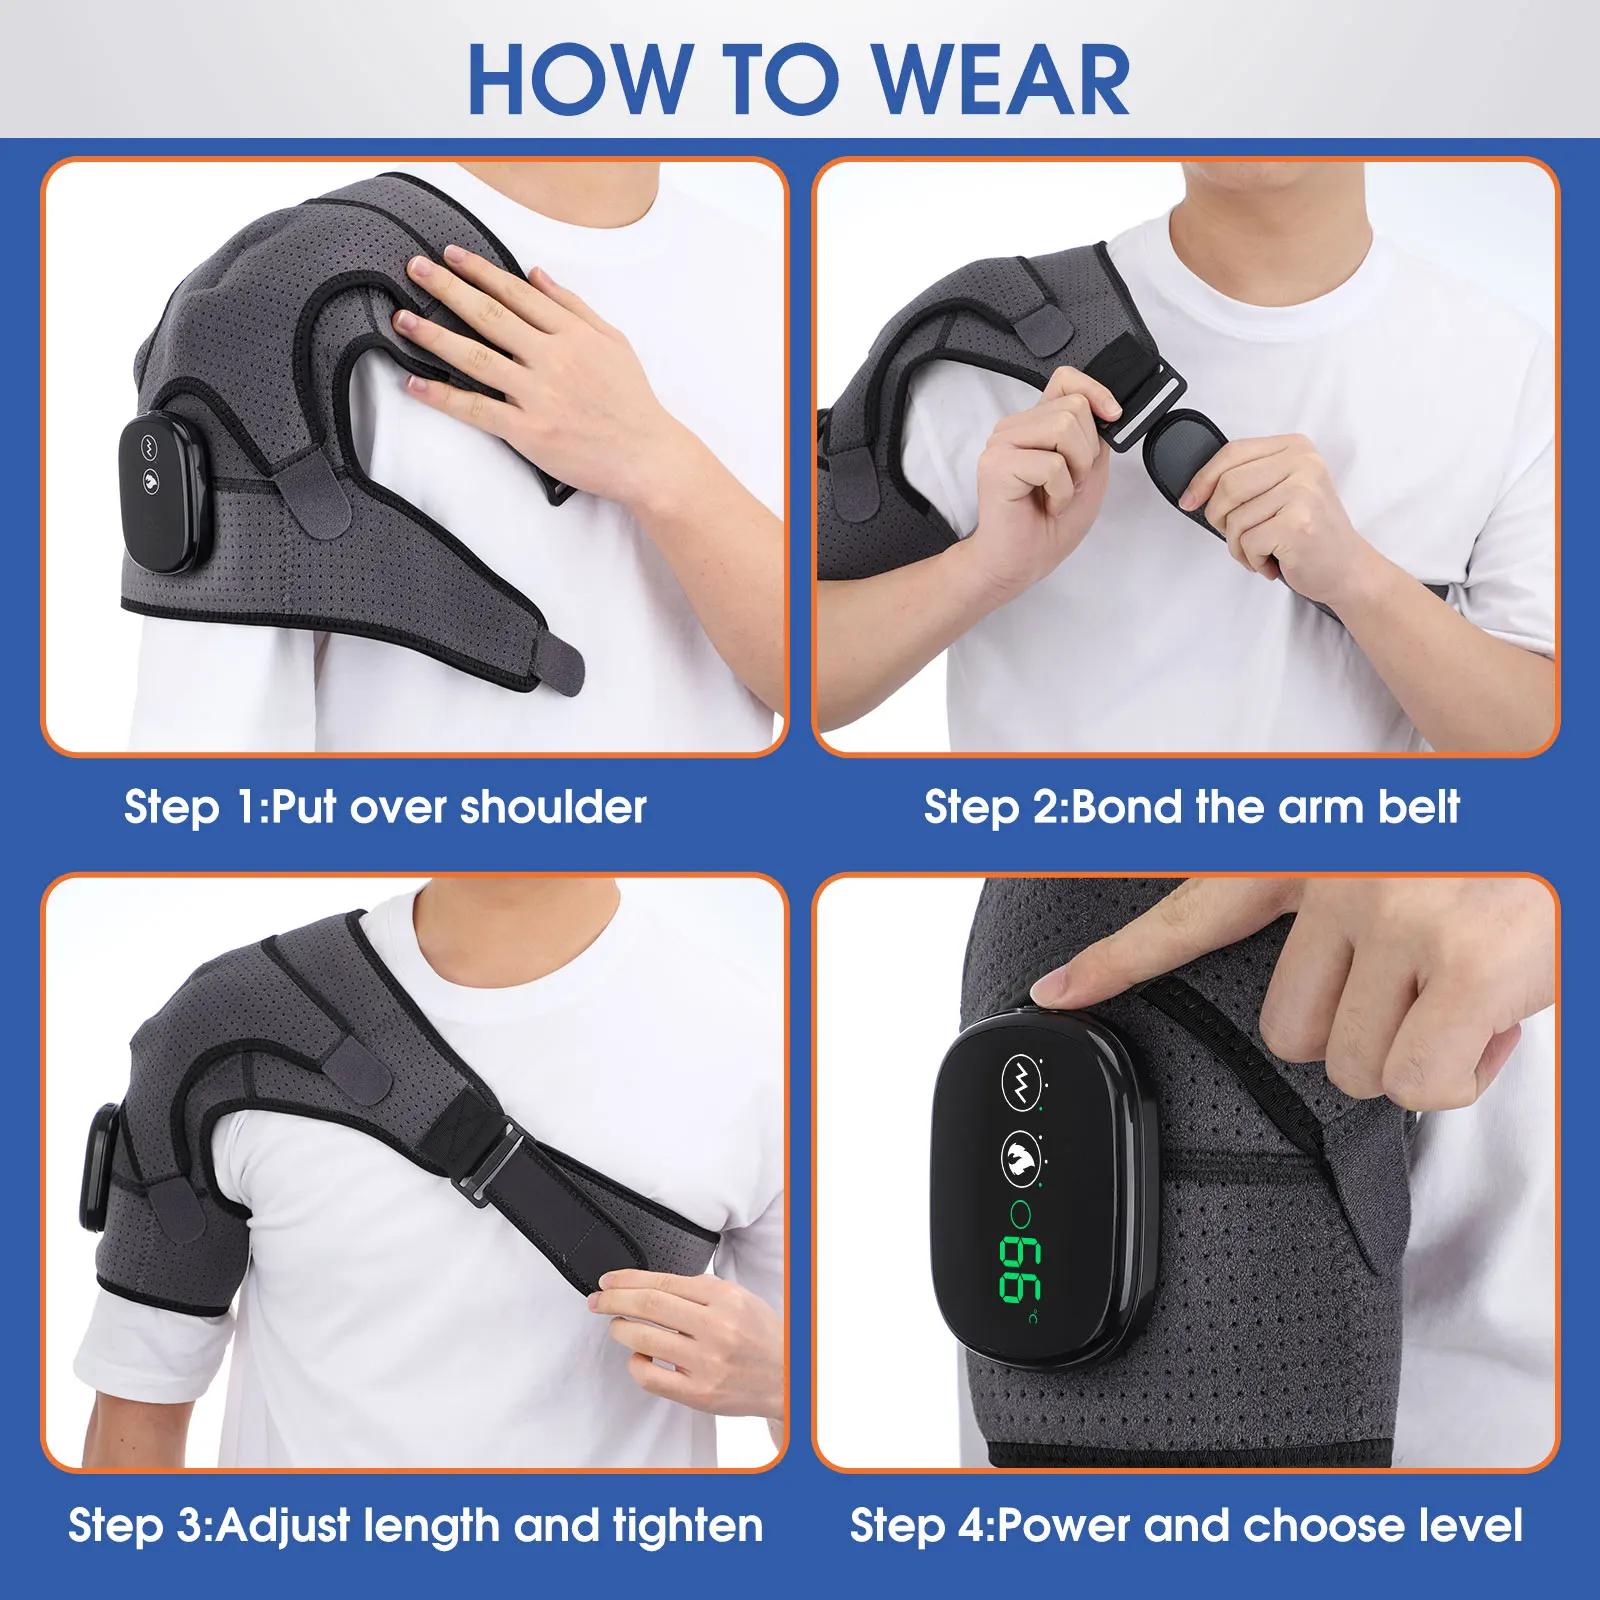 How to wear shoulder massager